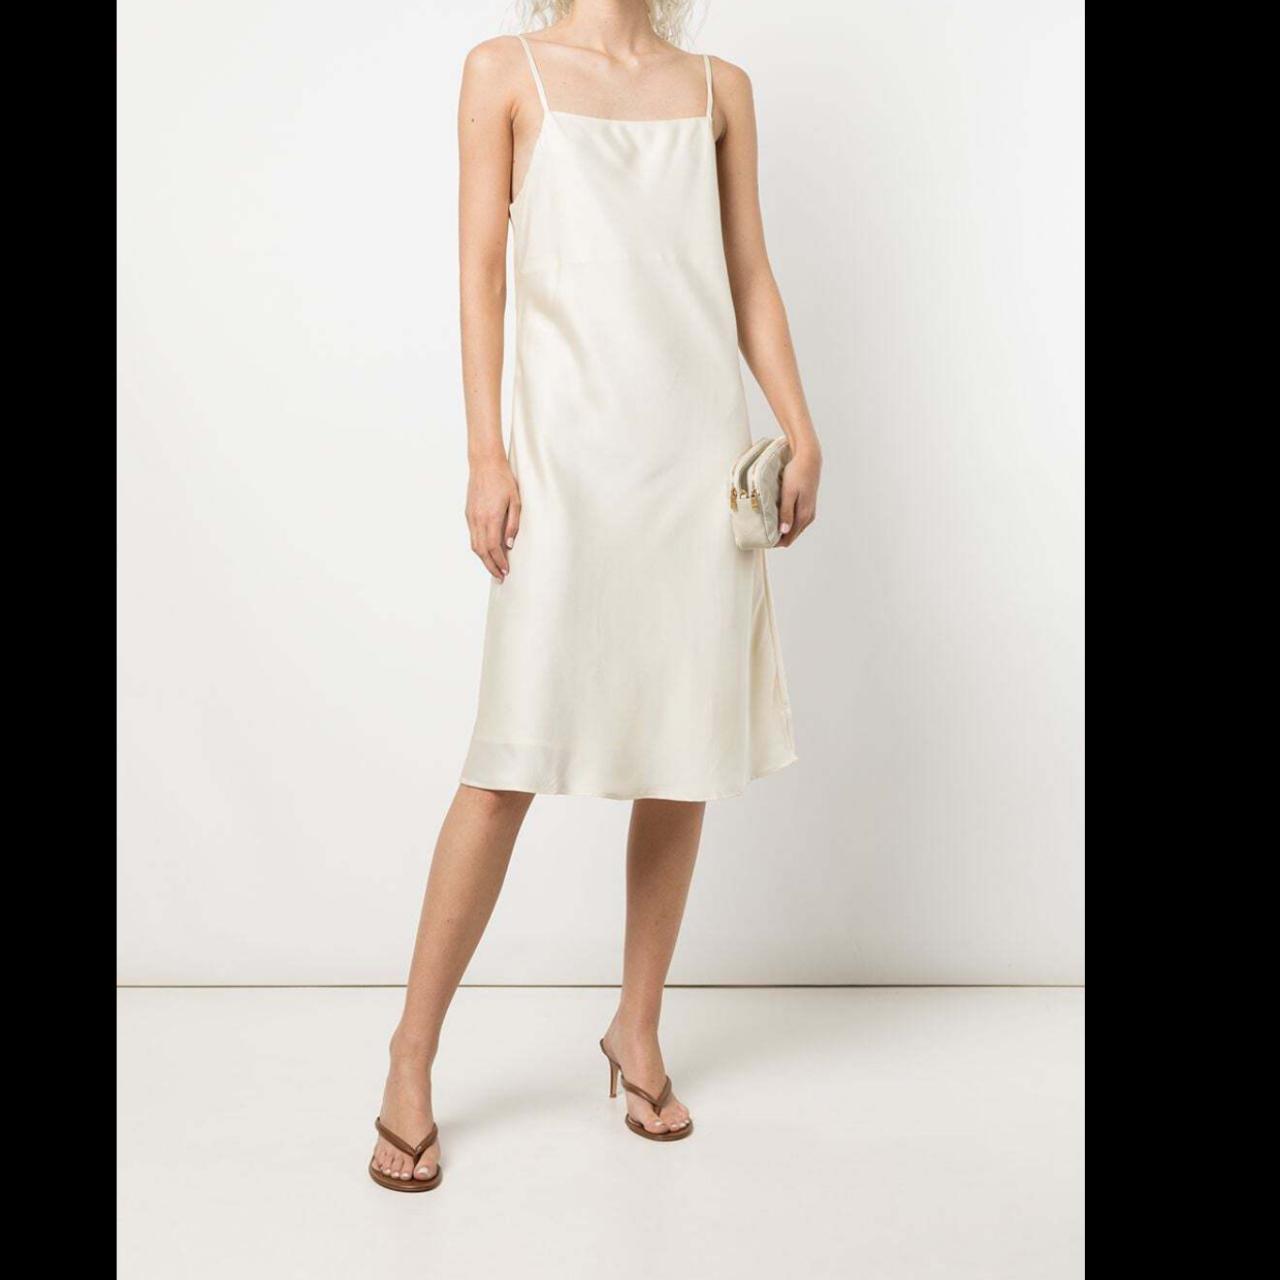 Apparis Women's White Dress